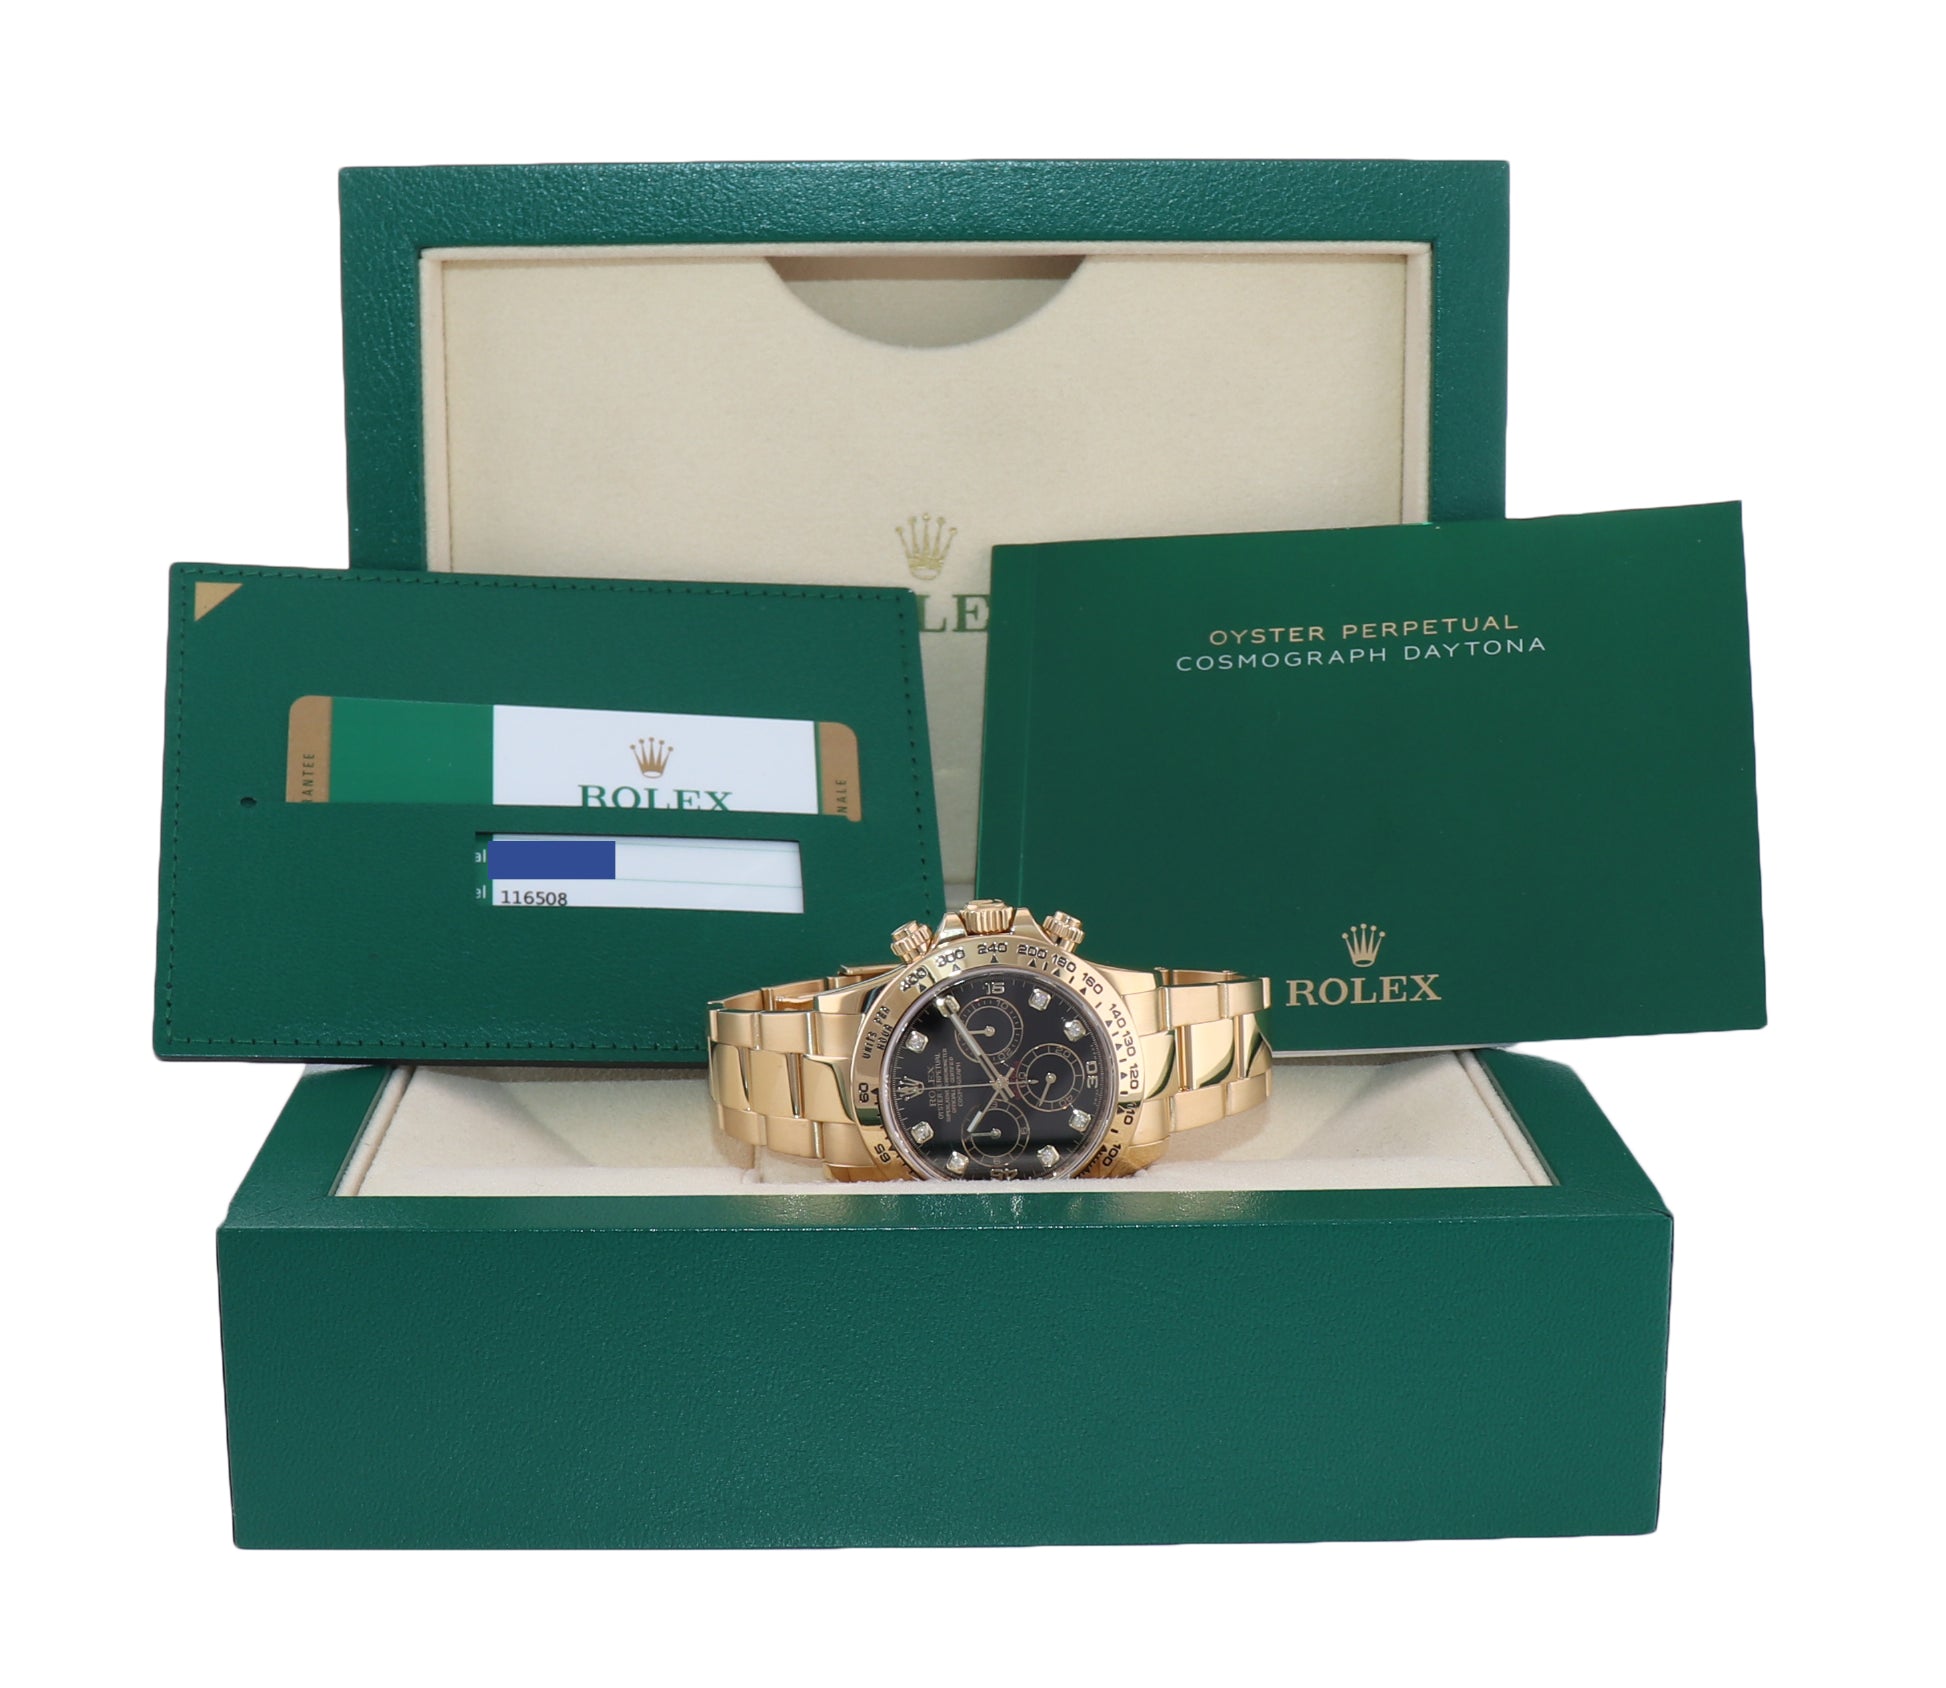 2017 PAPERS Rolex Daytona 116508 Black Diamond Yellow Gold Chrono Watch Box